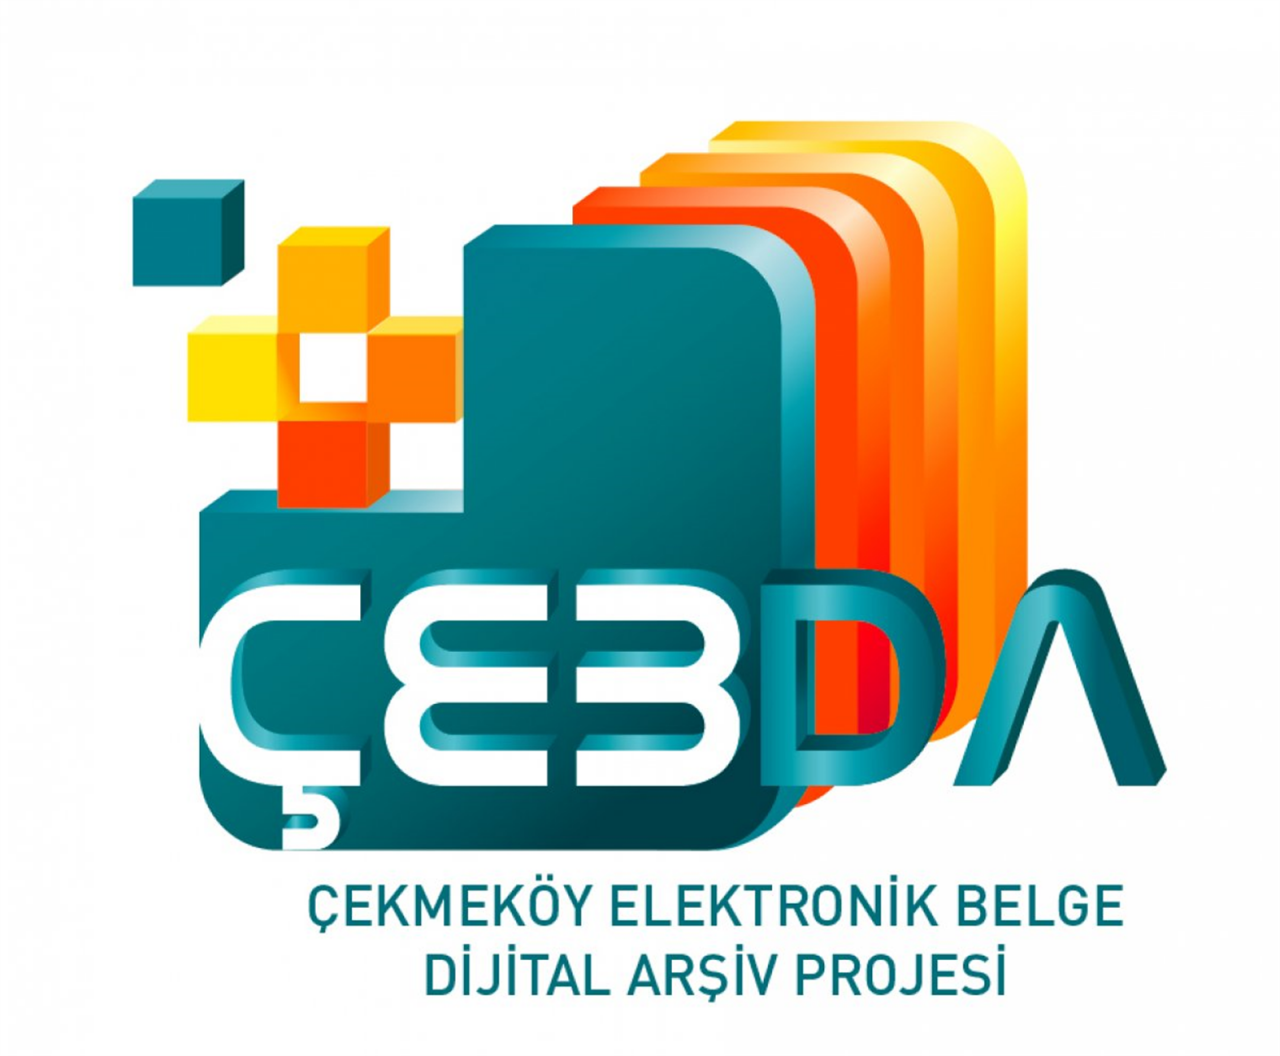 ÇEBDA (Çekmeköy Elektronik Belge ve Dijital Arşiv)